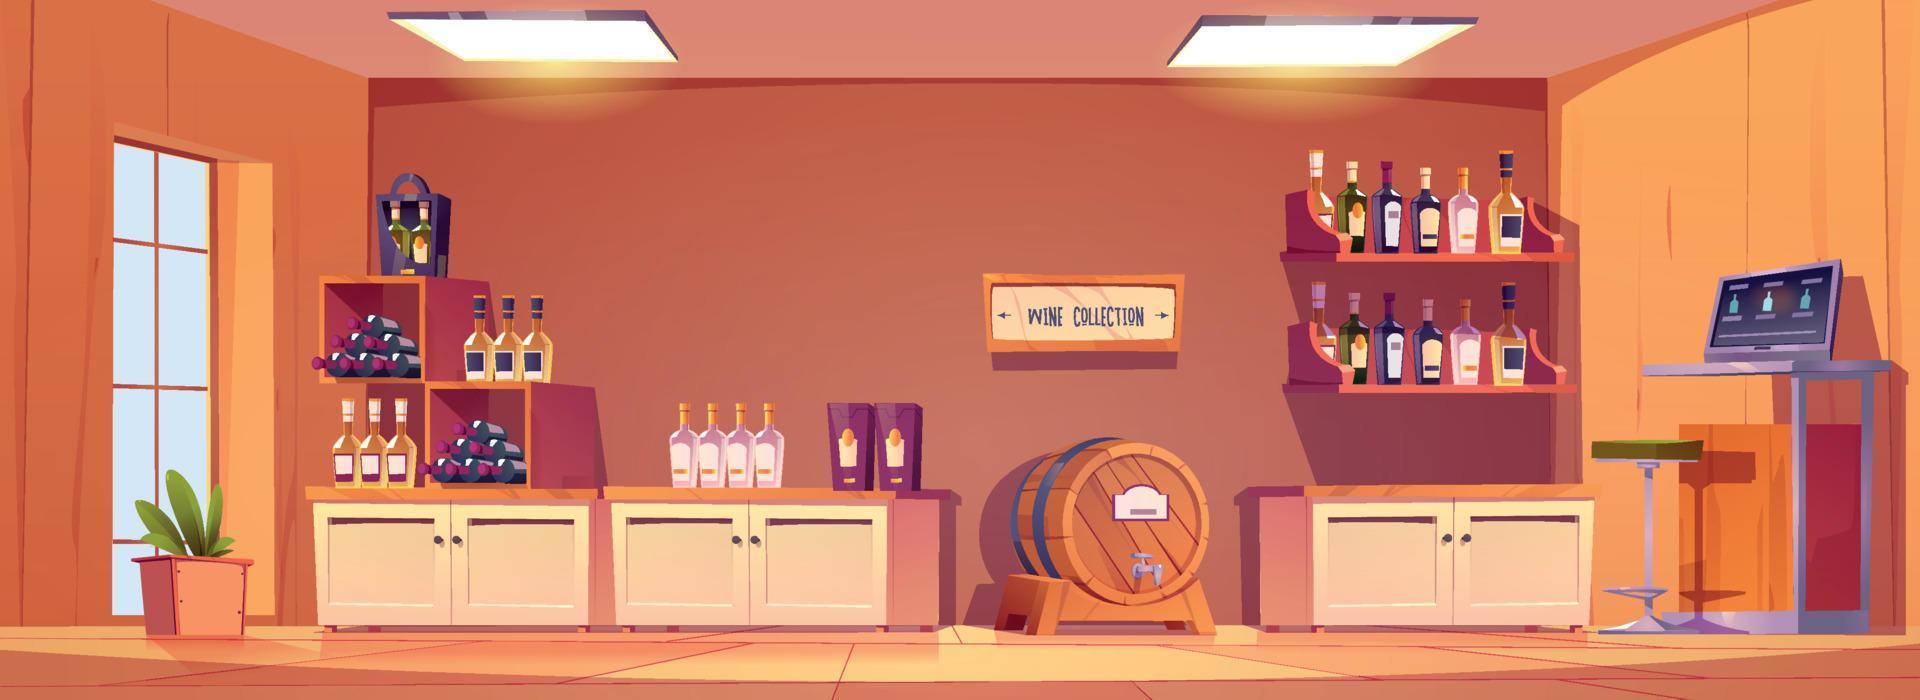 Cartoon wine shop interior design vector